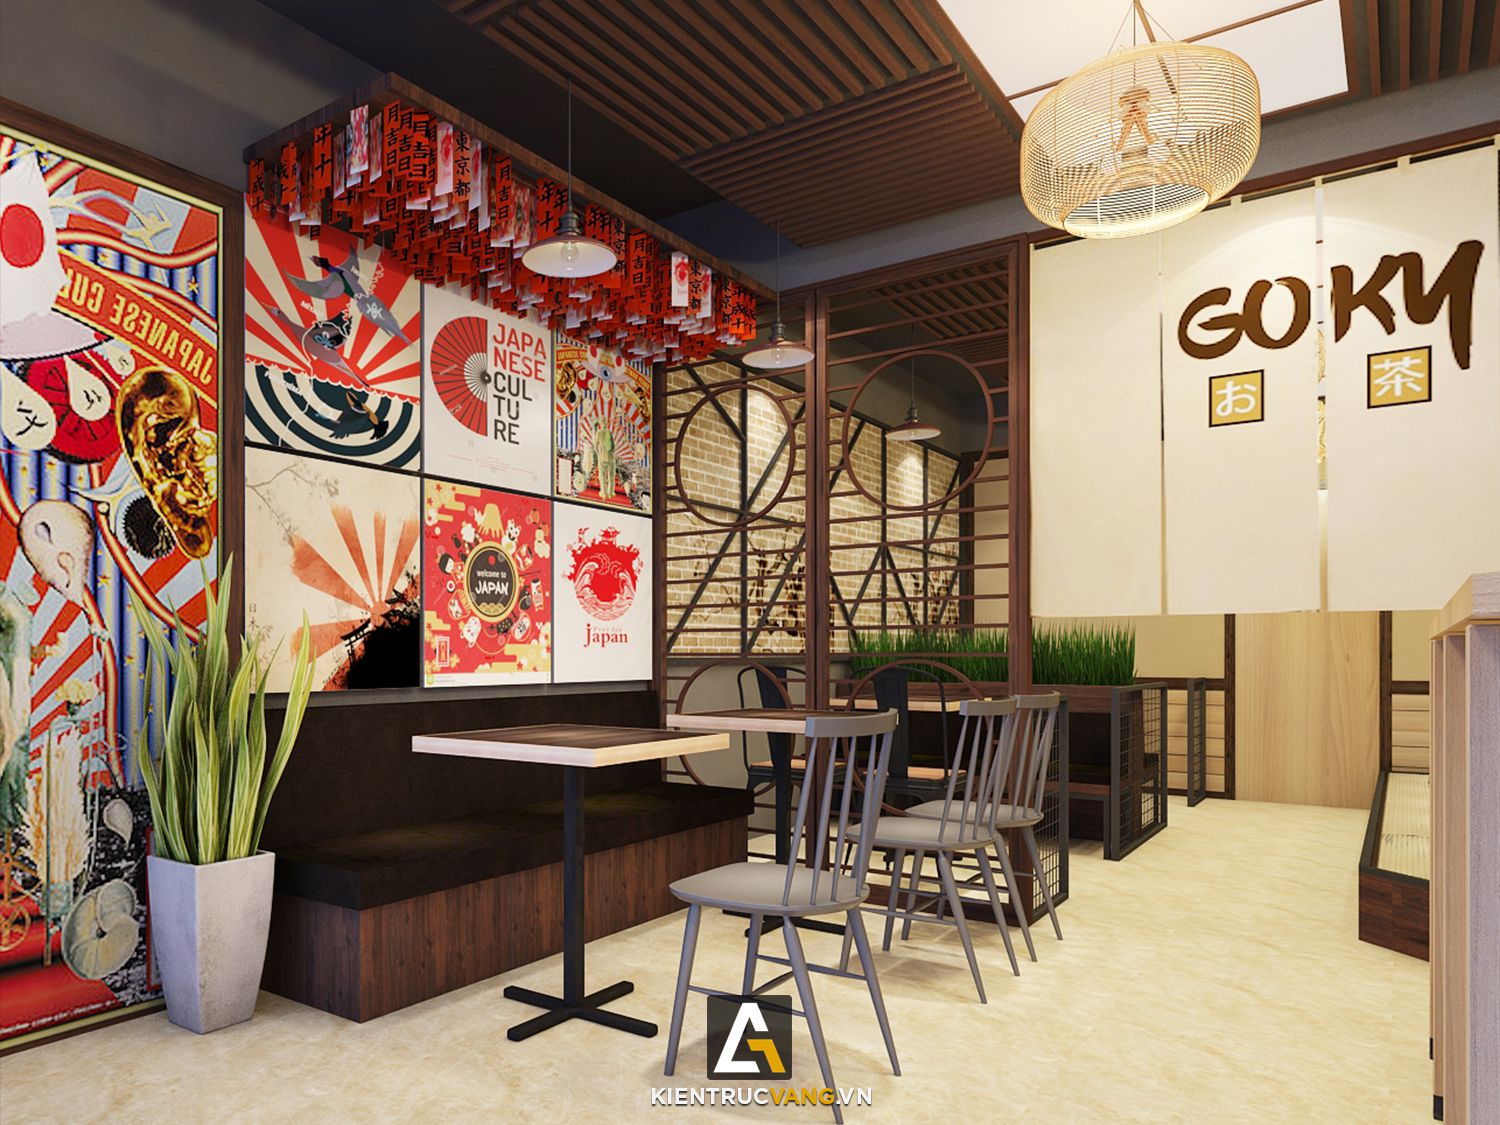 Thiết kế nội thất Cafe tại Hà Nội Thiết kế quán trà sữa Goky, chi nhánh Trung Kính 1616668923 4